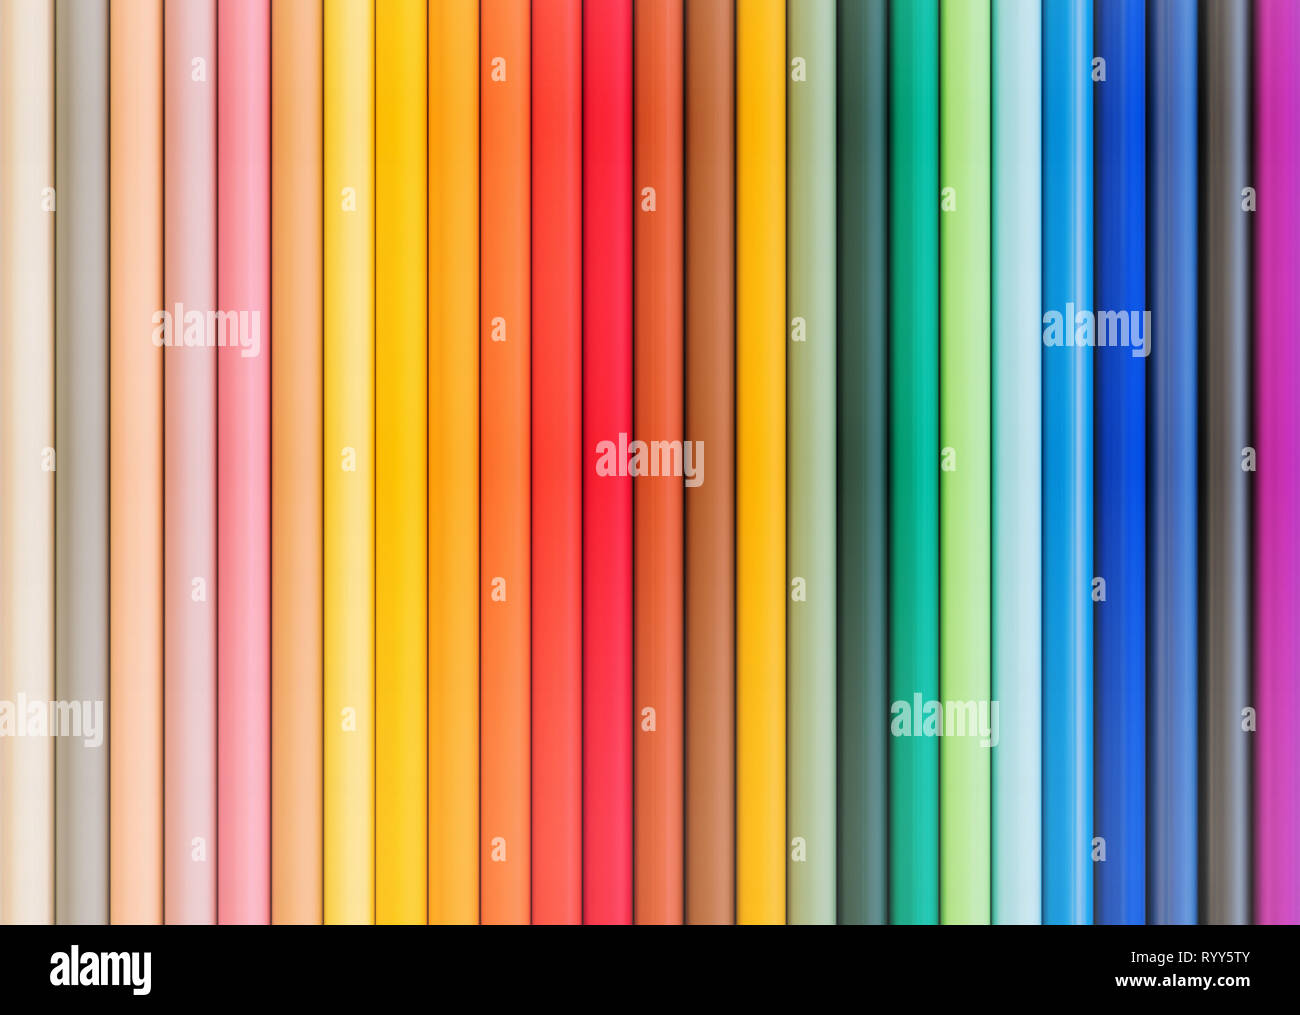 Sfondi colorati immagini e fotografie stock ad alta risoluzione - Alamy